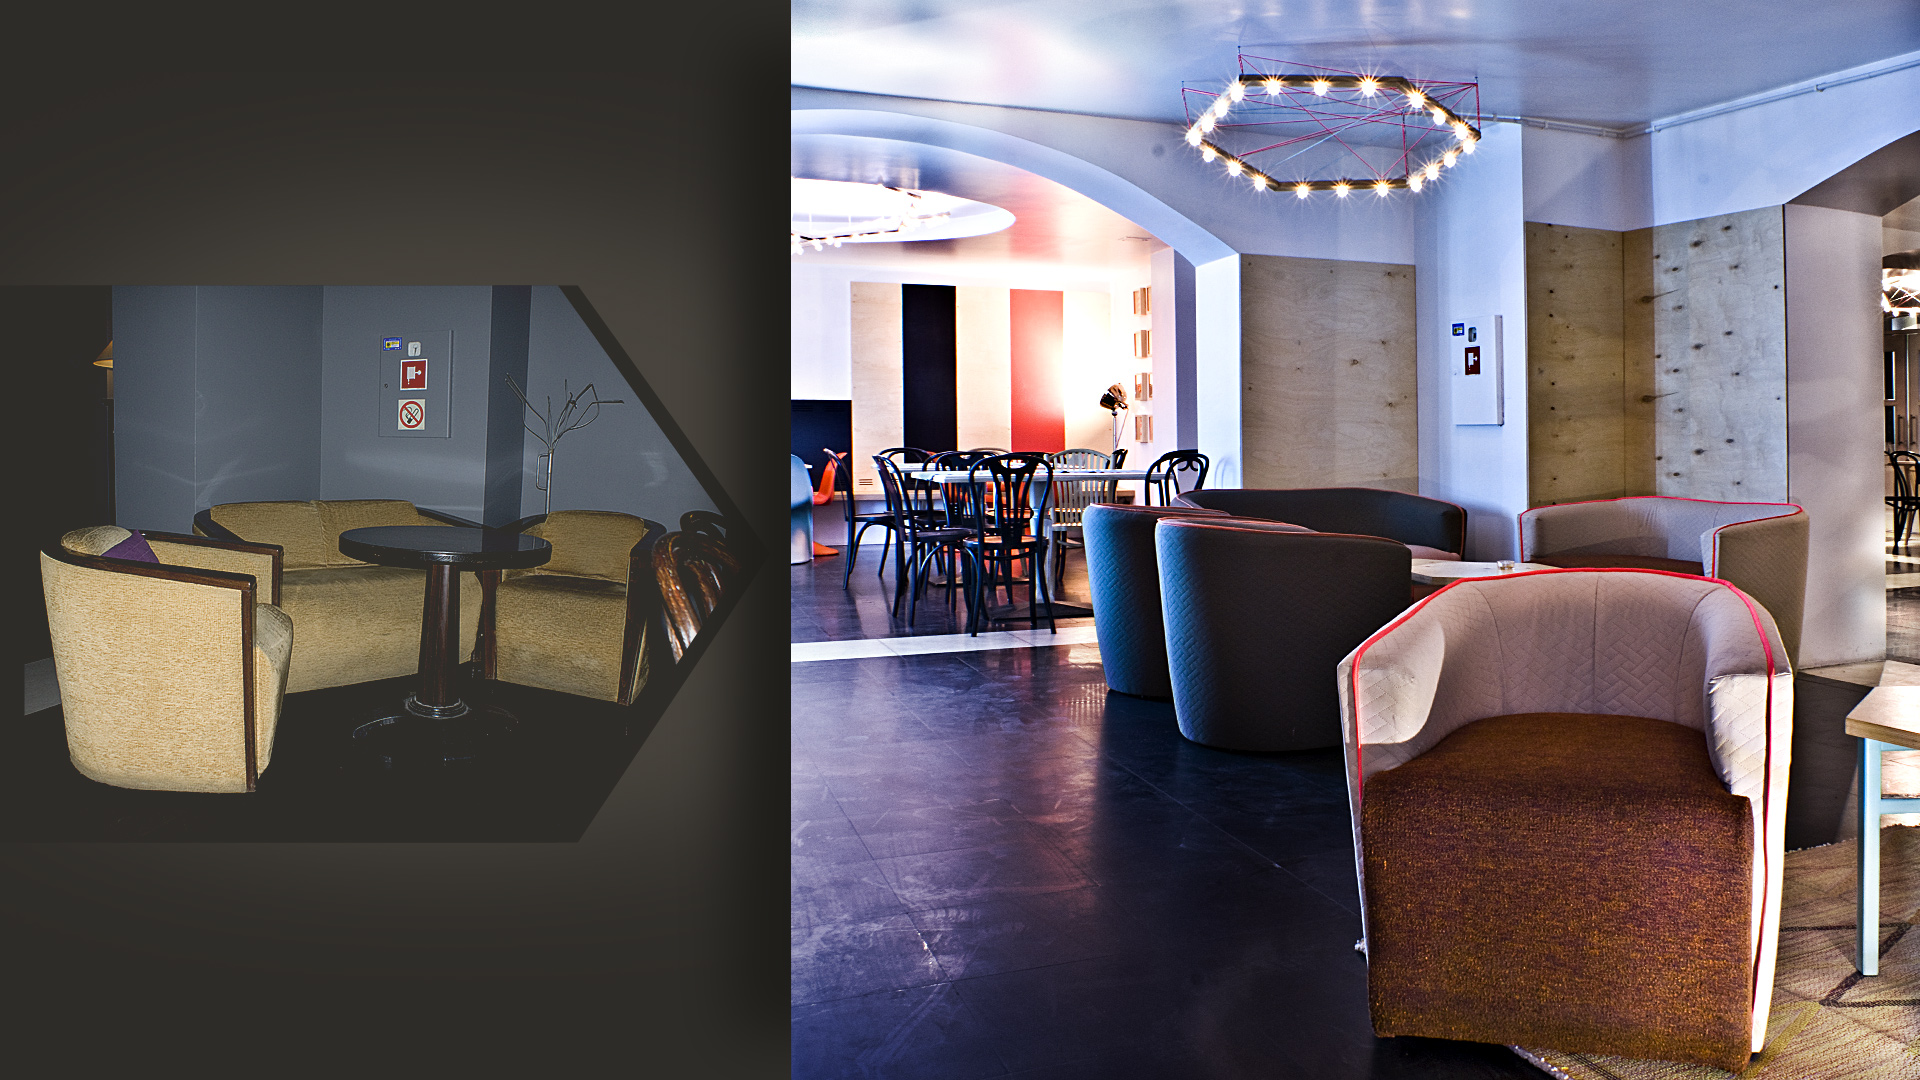 Efektowne wnętrze restauracji przy niskim budżecie? Stało się to możliwe między innymi dzięki pomysłowemu pomysłowemu rozwiązaniu na renowację starych foteli i kanap (po lewej).